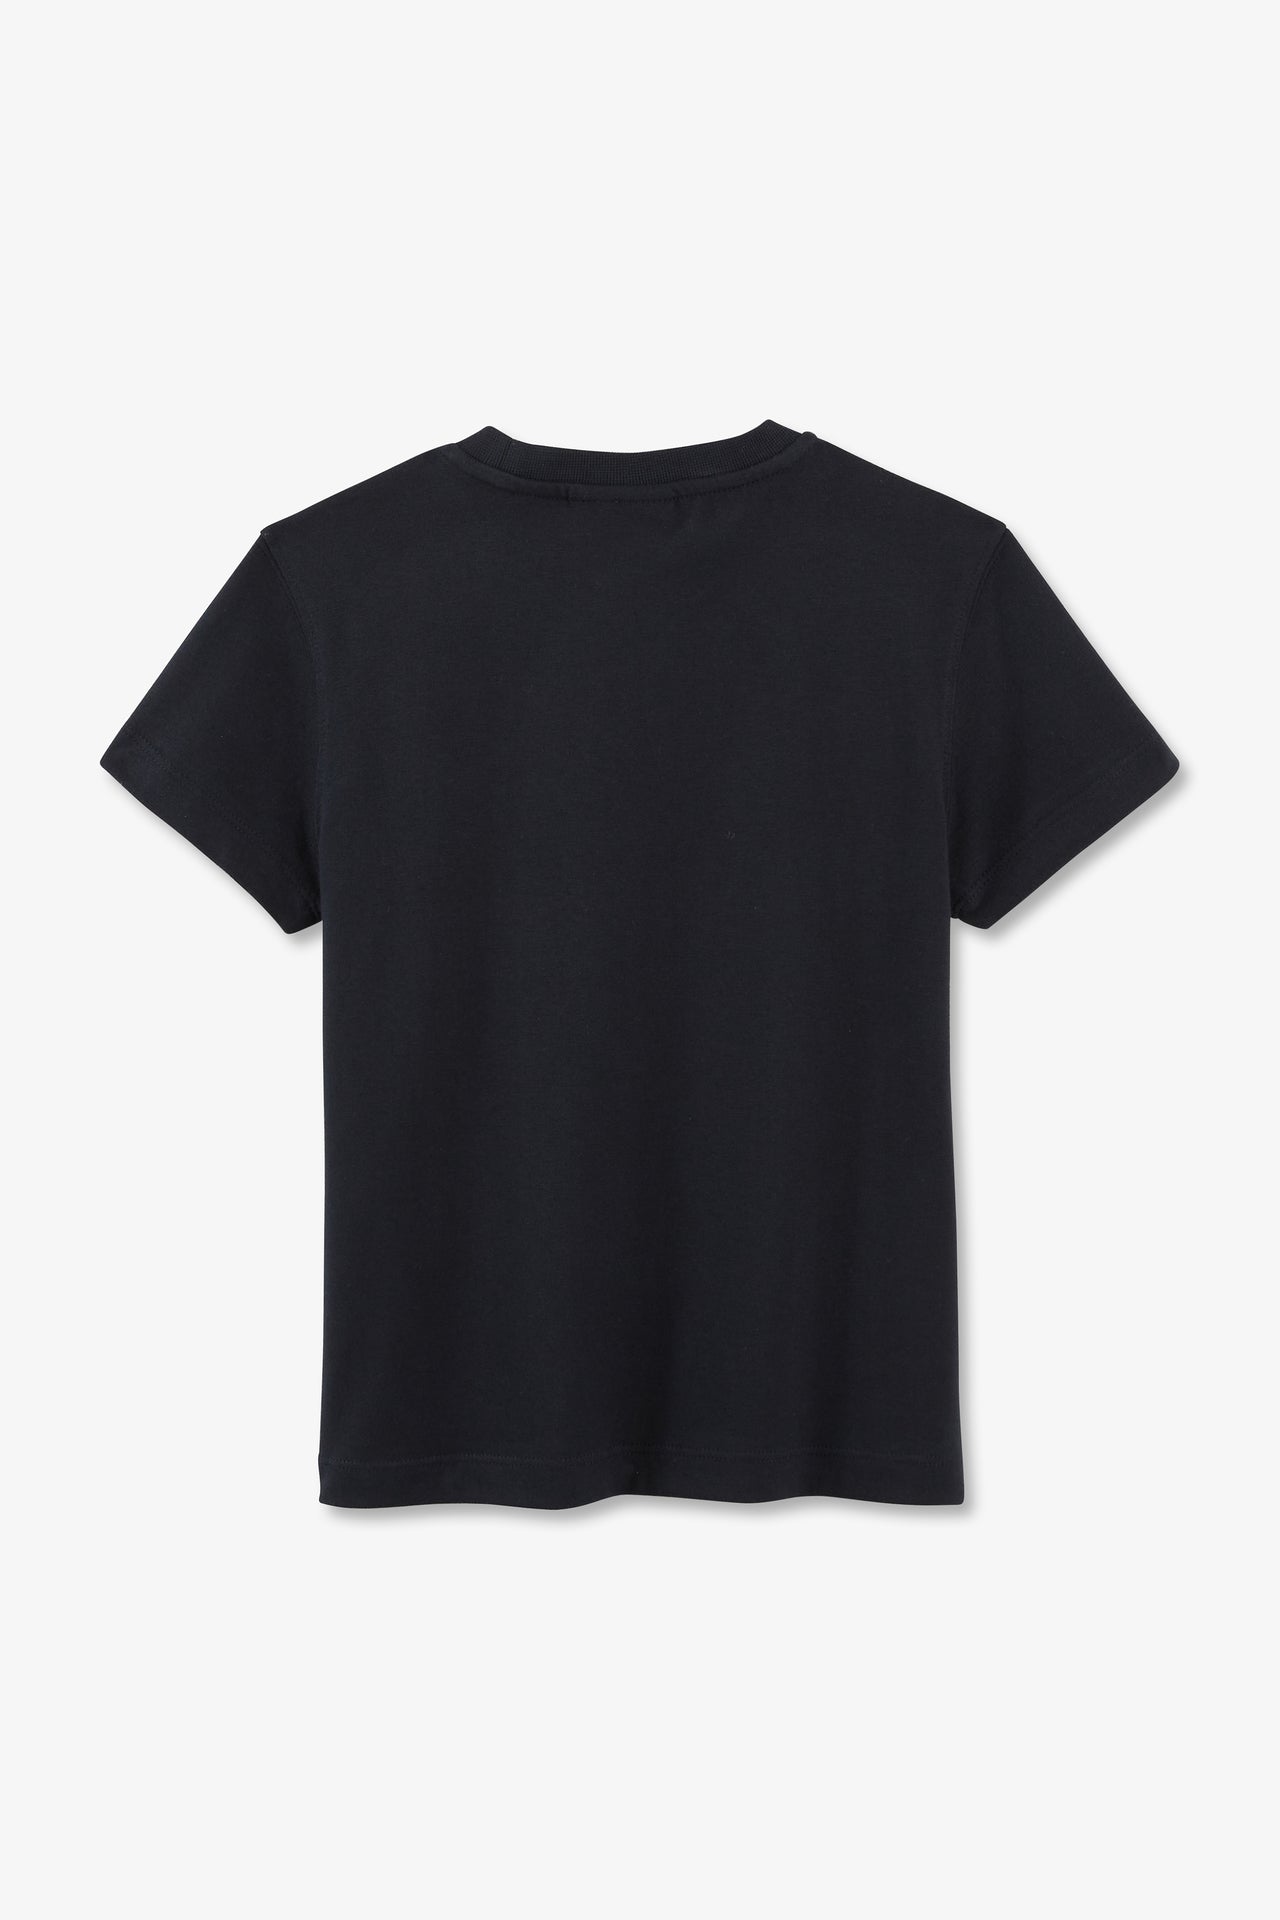 T-shirt débossé Eden Park marine en jersey coton